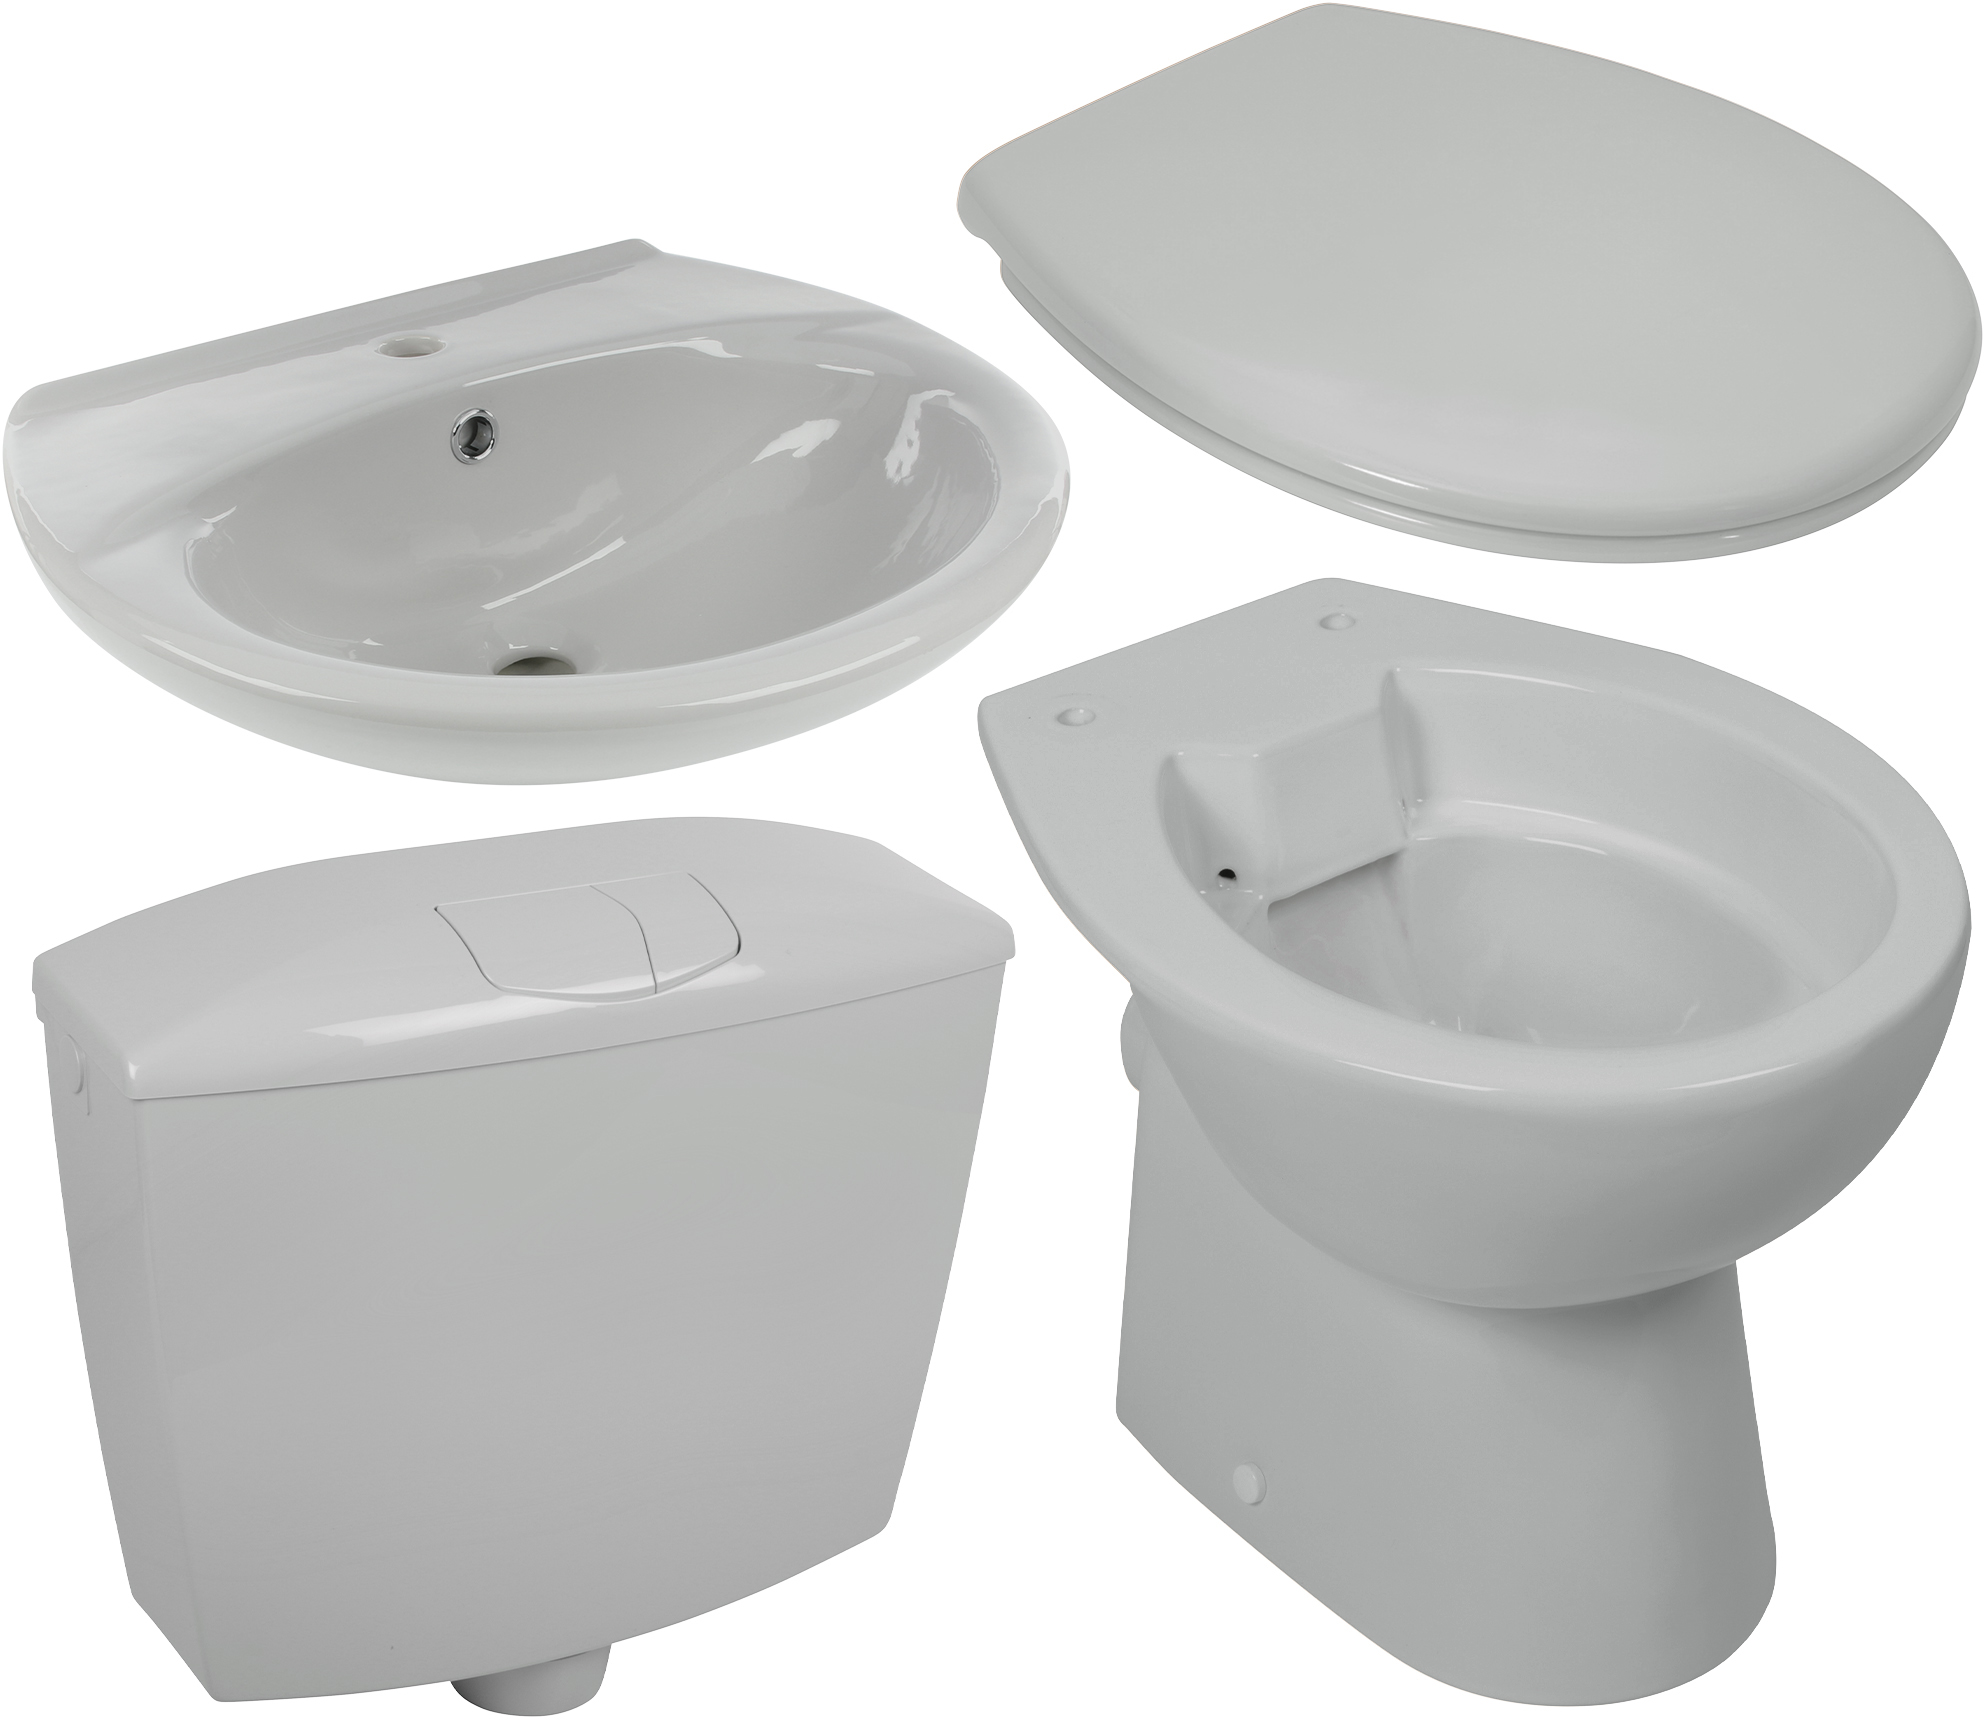 Keramik-Komplettset in Manhattan-Grau mit Stand-WC, WC-Sitz, Spülkasten und Waschtisch 55 cm